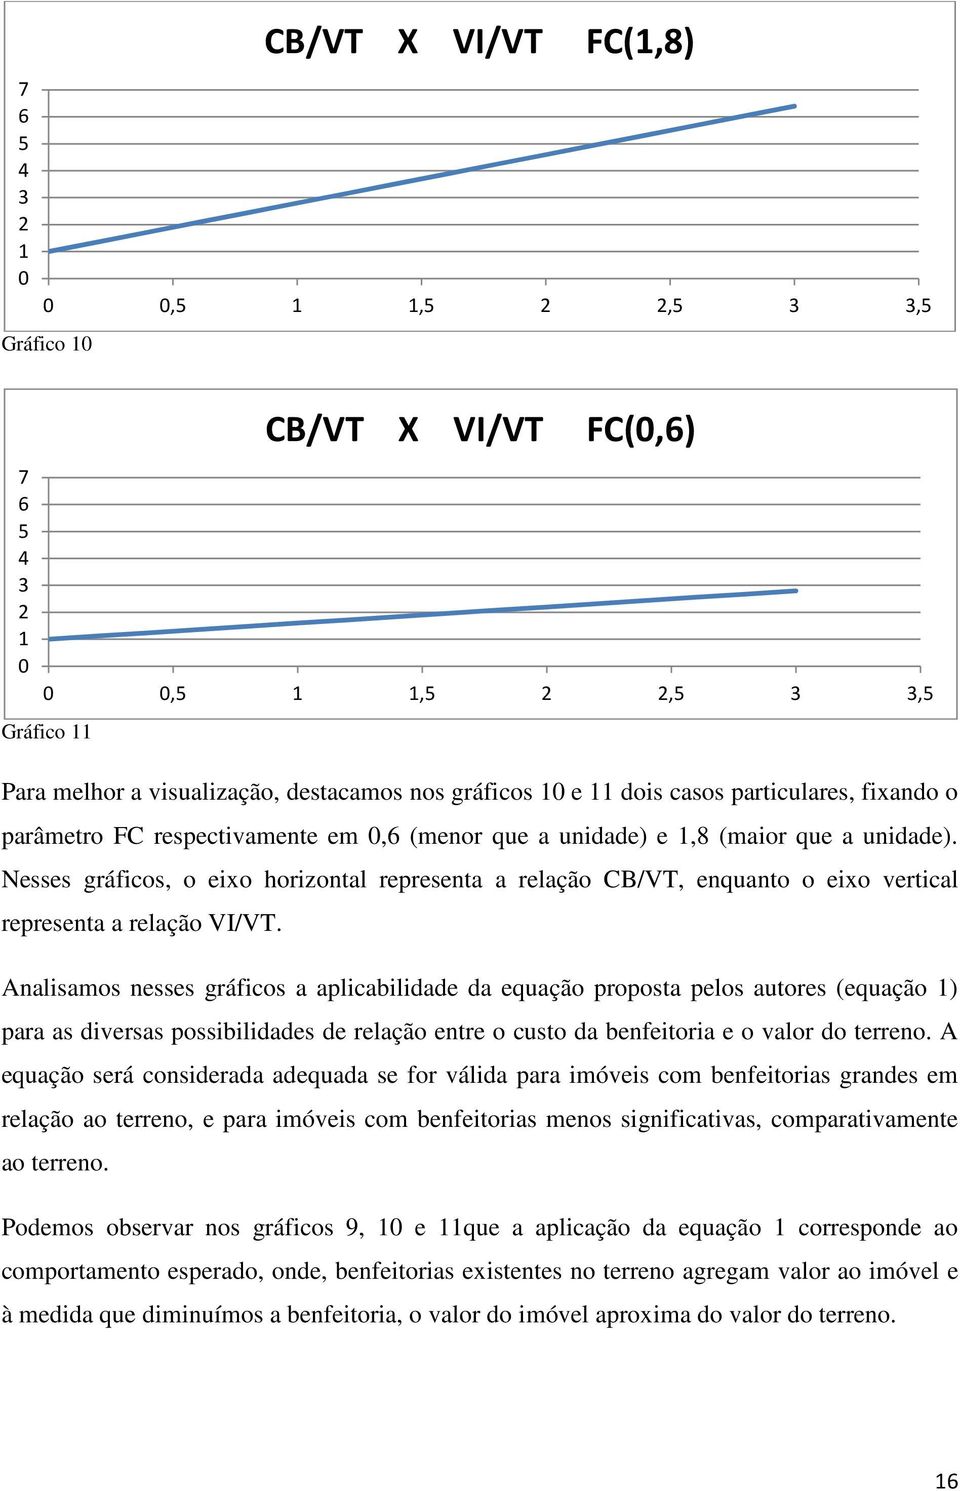 Nesses gráficos, o eixo horizontal representa a relação CB/VT, enquanto o eixo vertical representa a relação VI/VT.